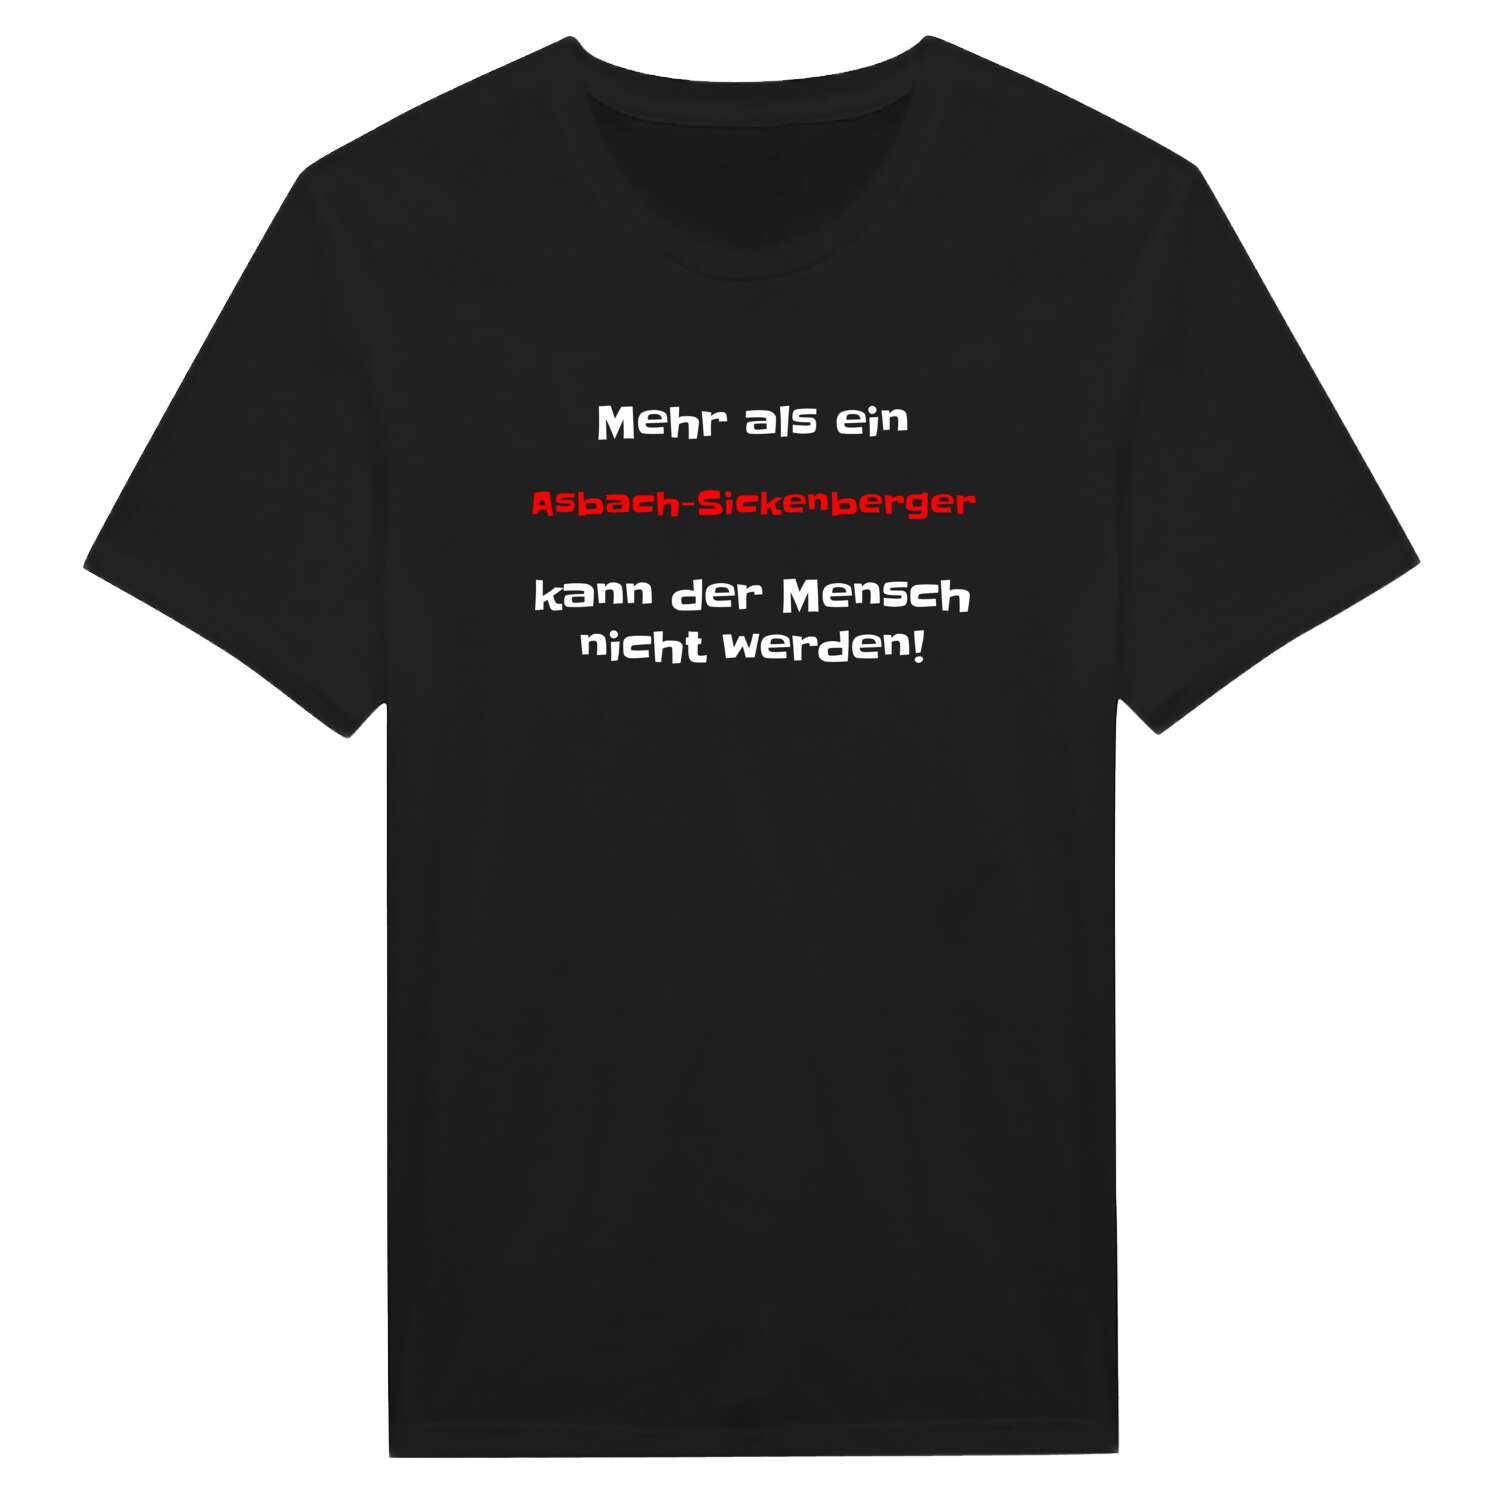 Asbach-Sickenberg T-Shirt »Mehr als ein«